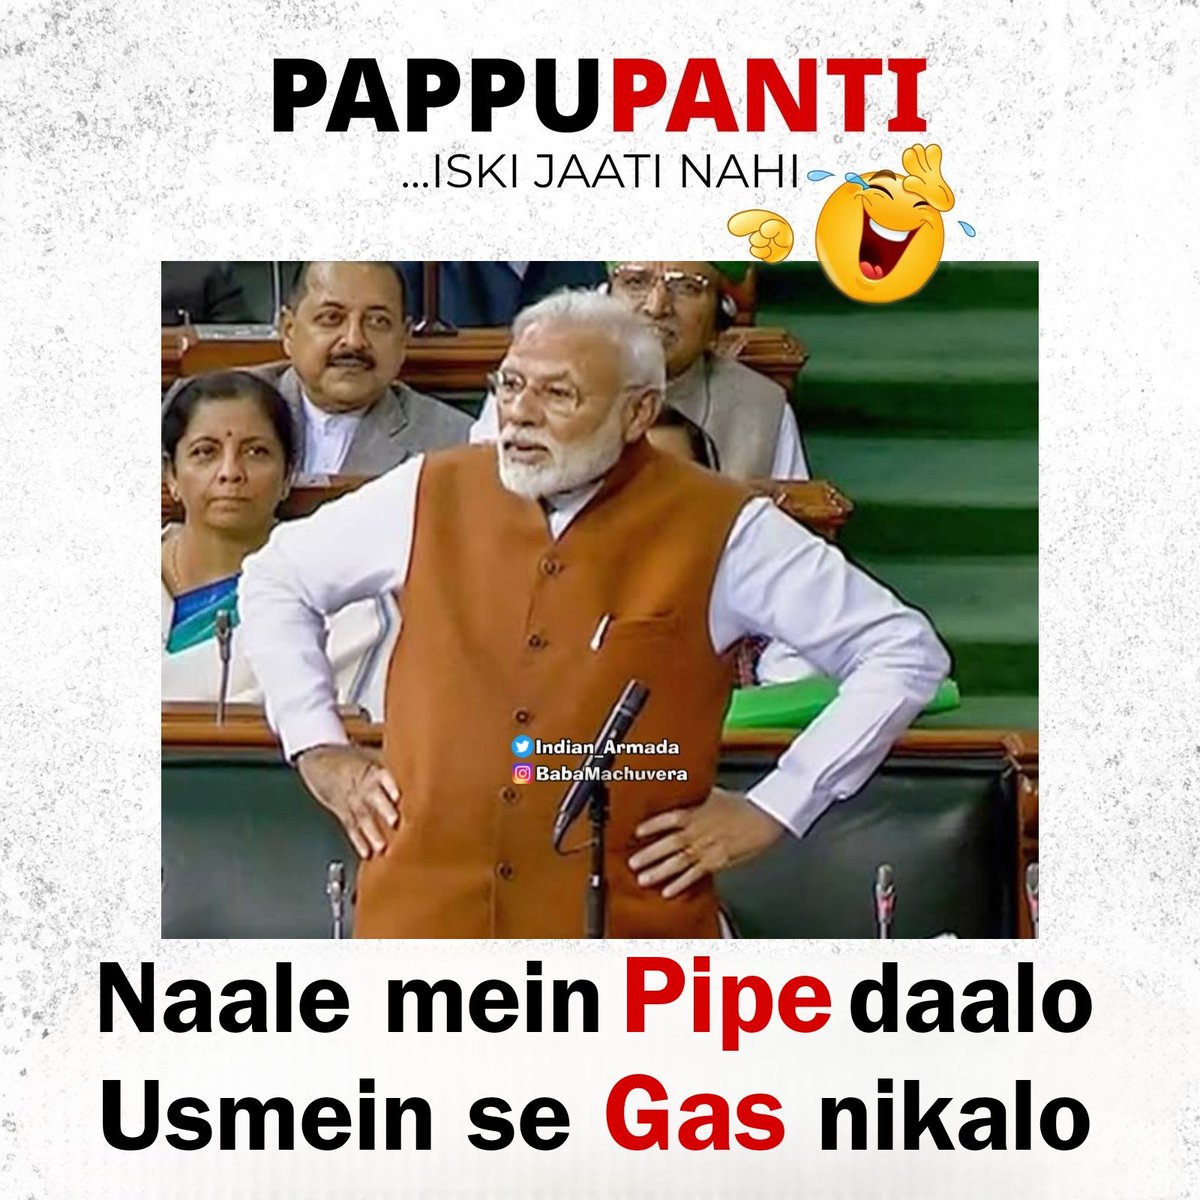 इनकी जाती ही नहीं है… #Pappupanti

विश्वगुरु की गटर गैस की चाय पी लो अंडभक्तों